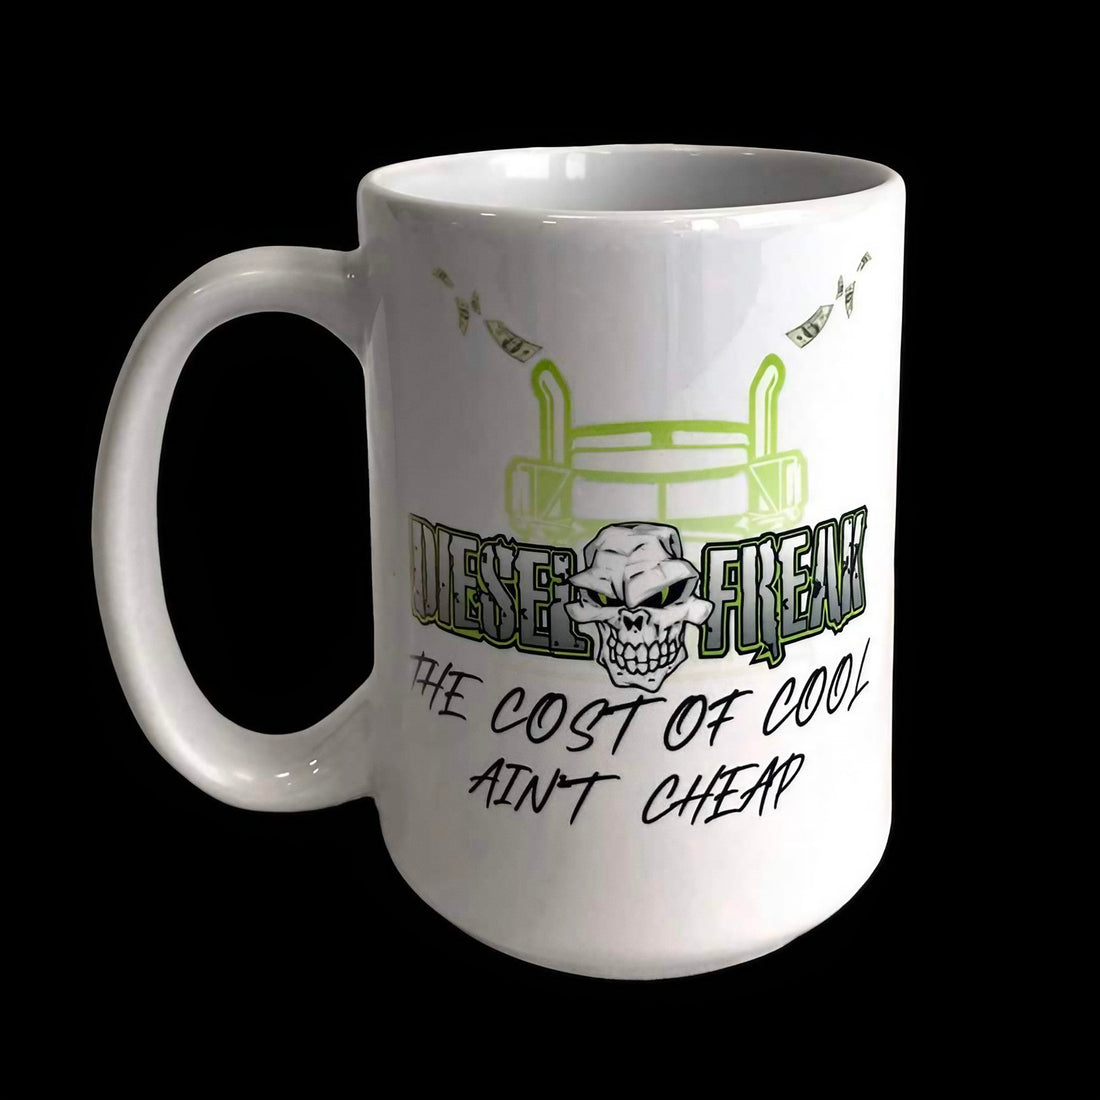 Cost of cool coffee mugs - Diesel Freak